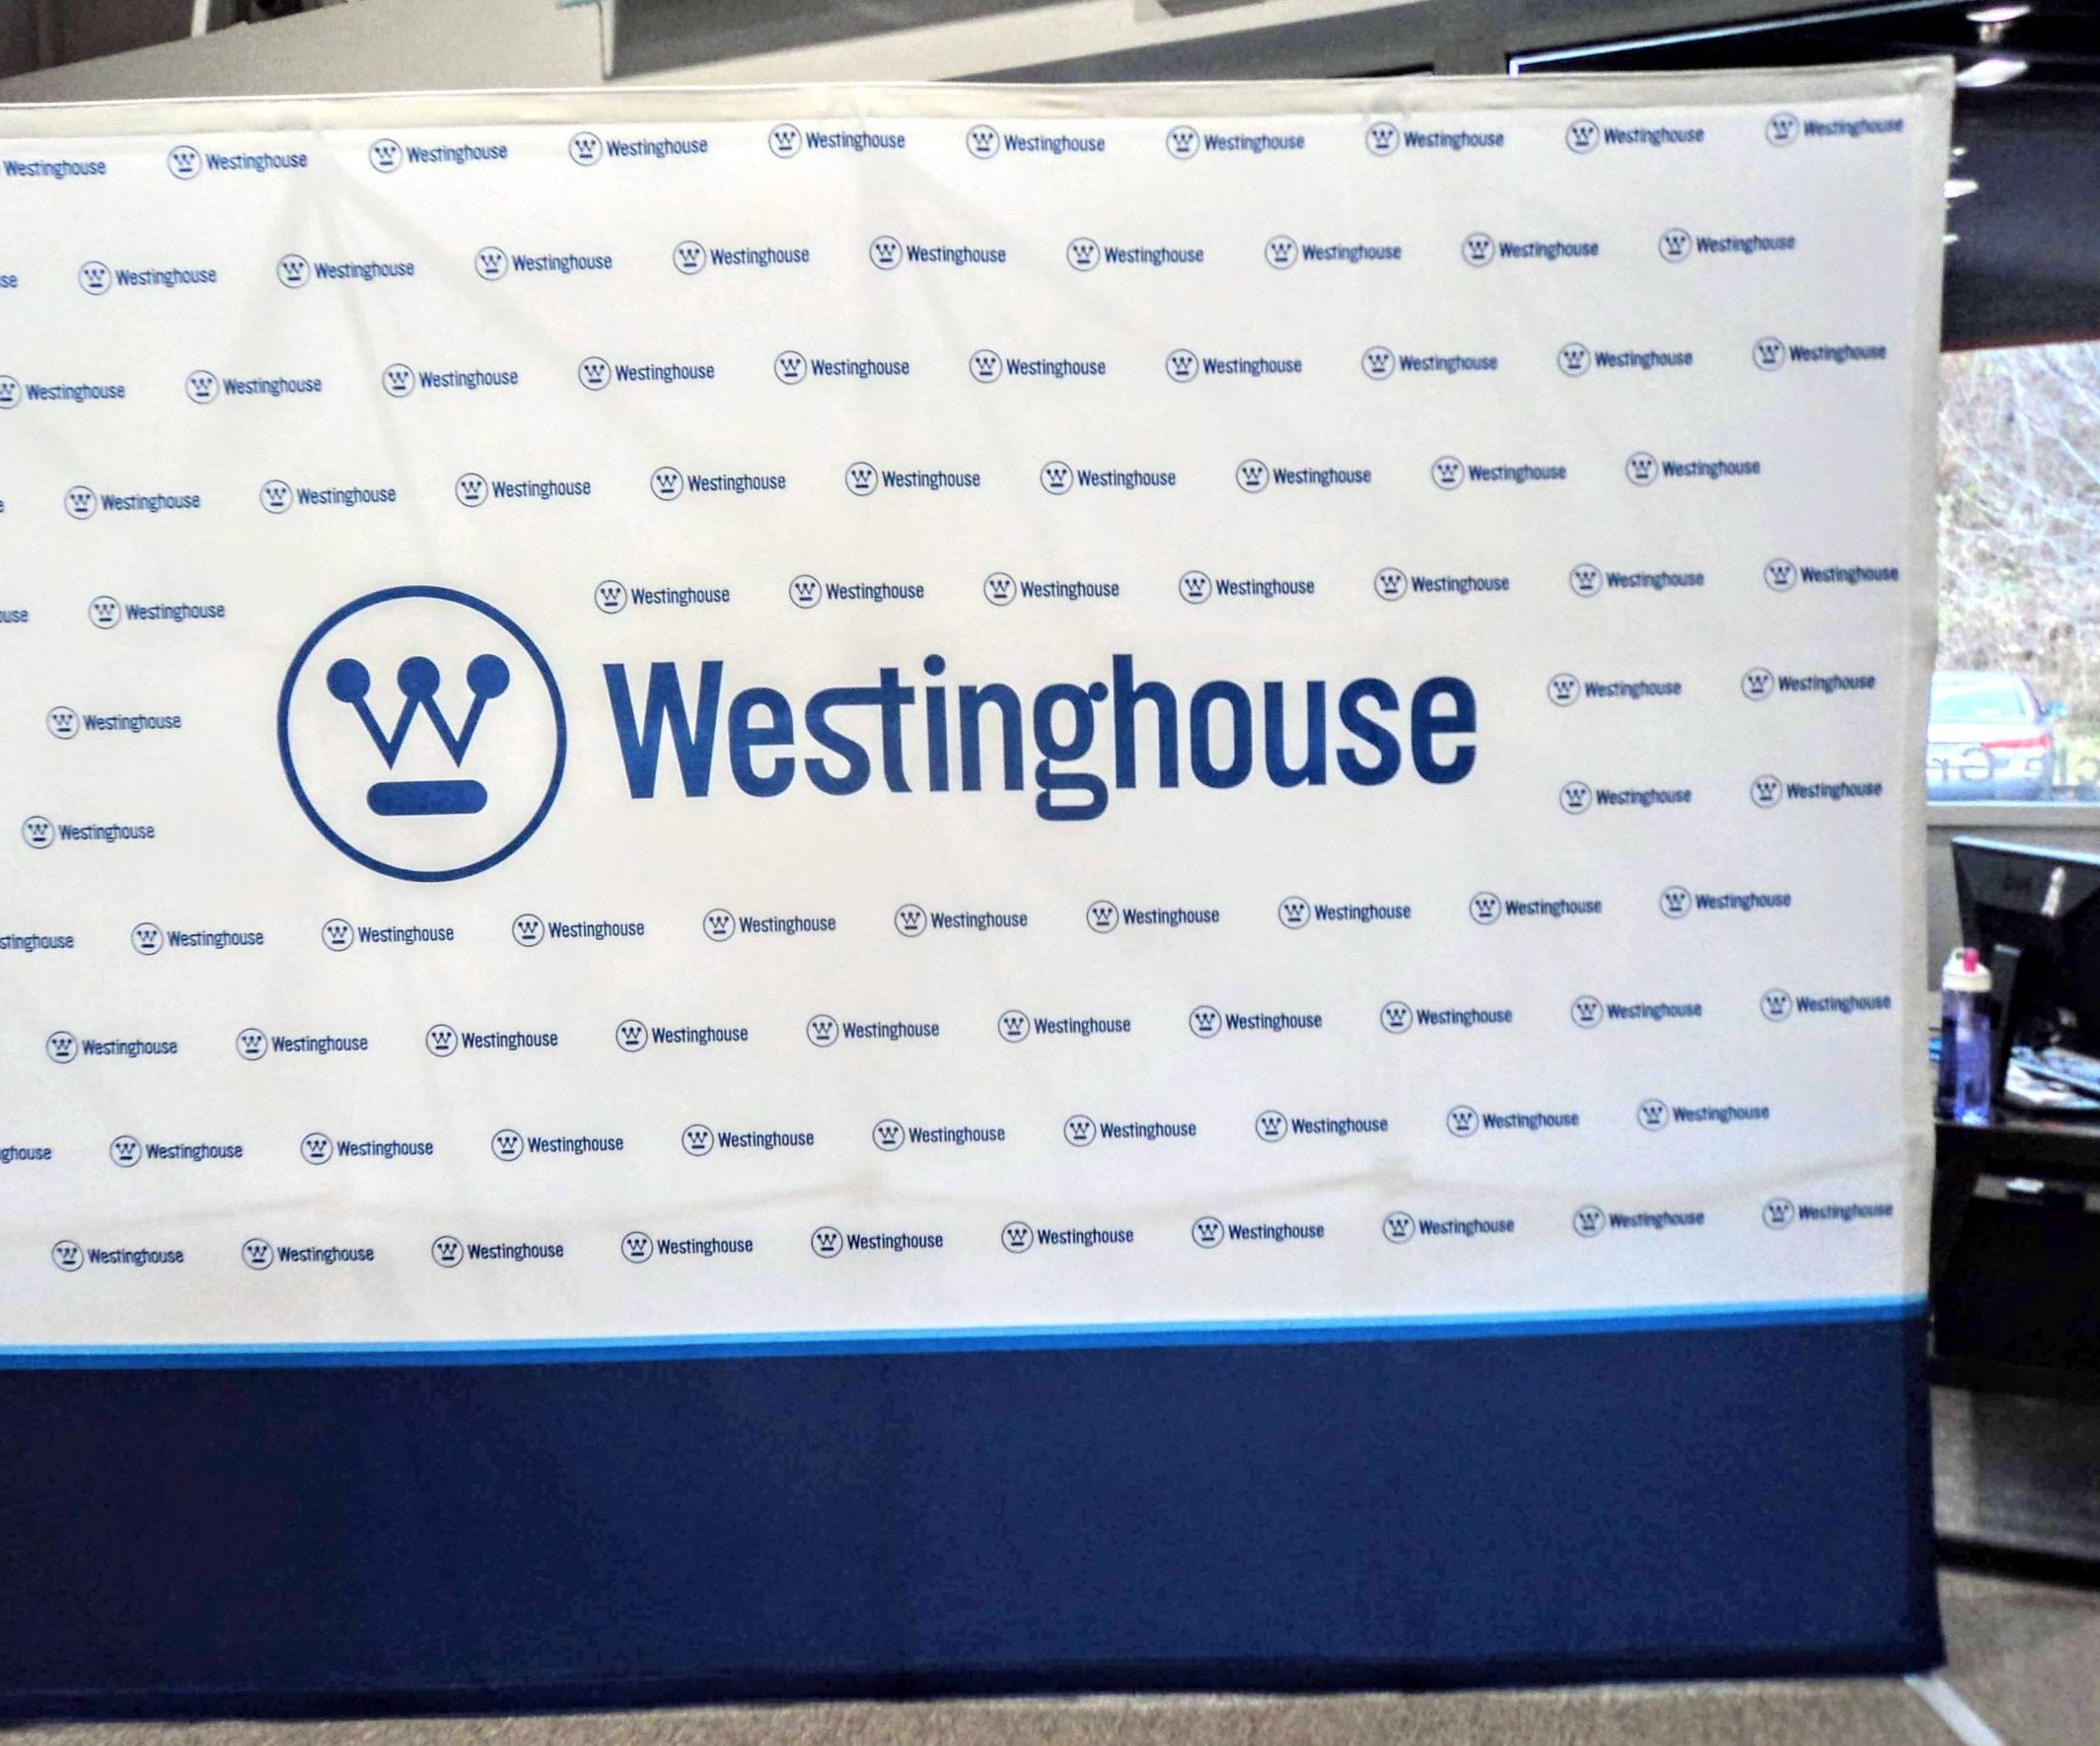 Westinghouse photo backdrop